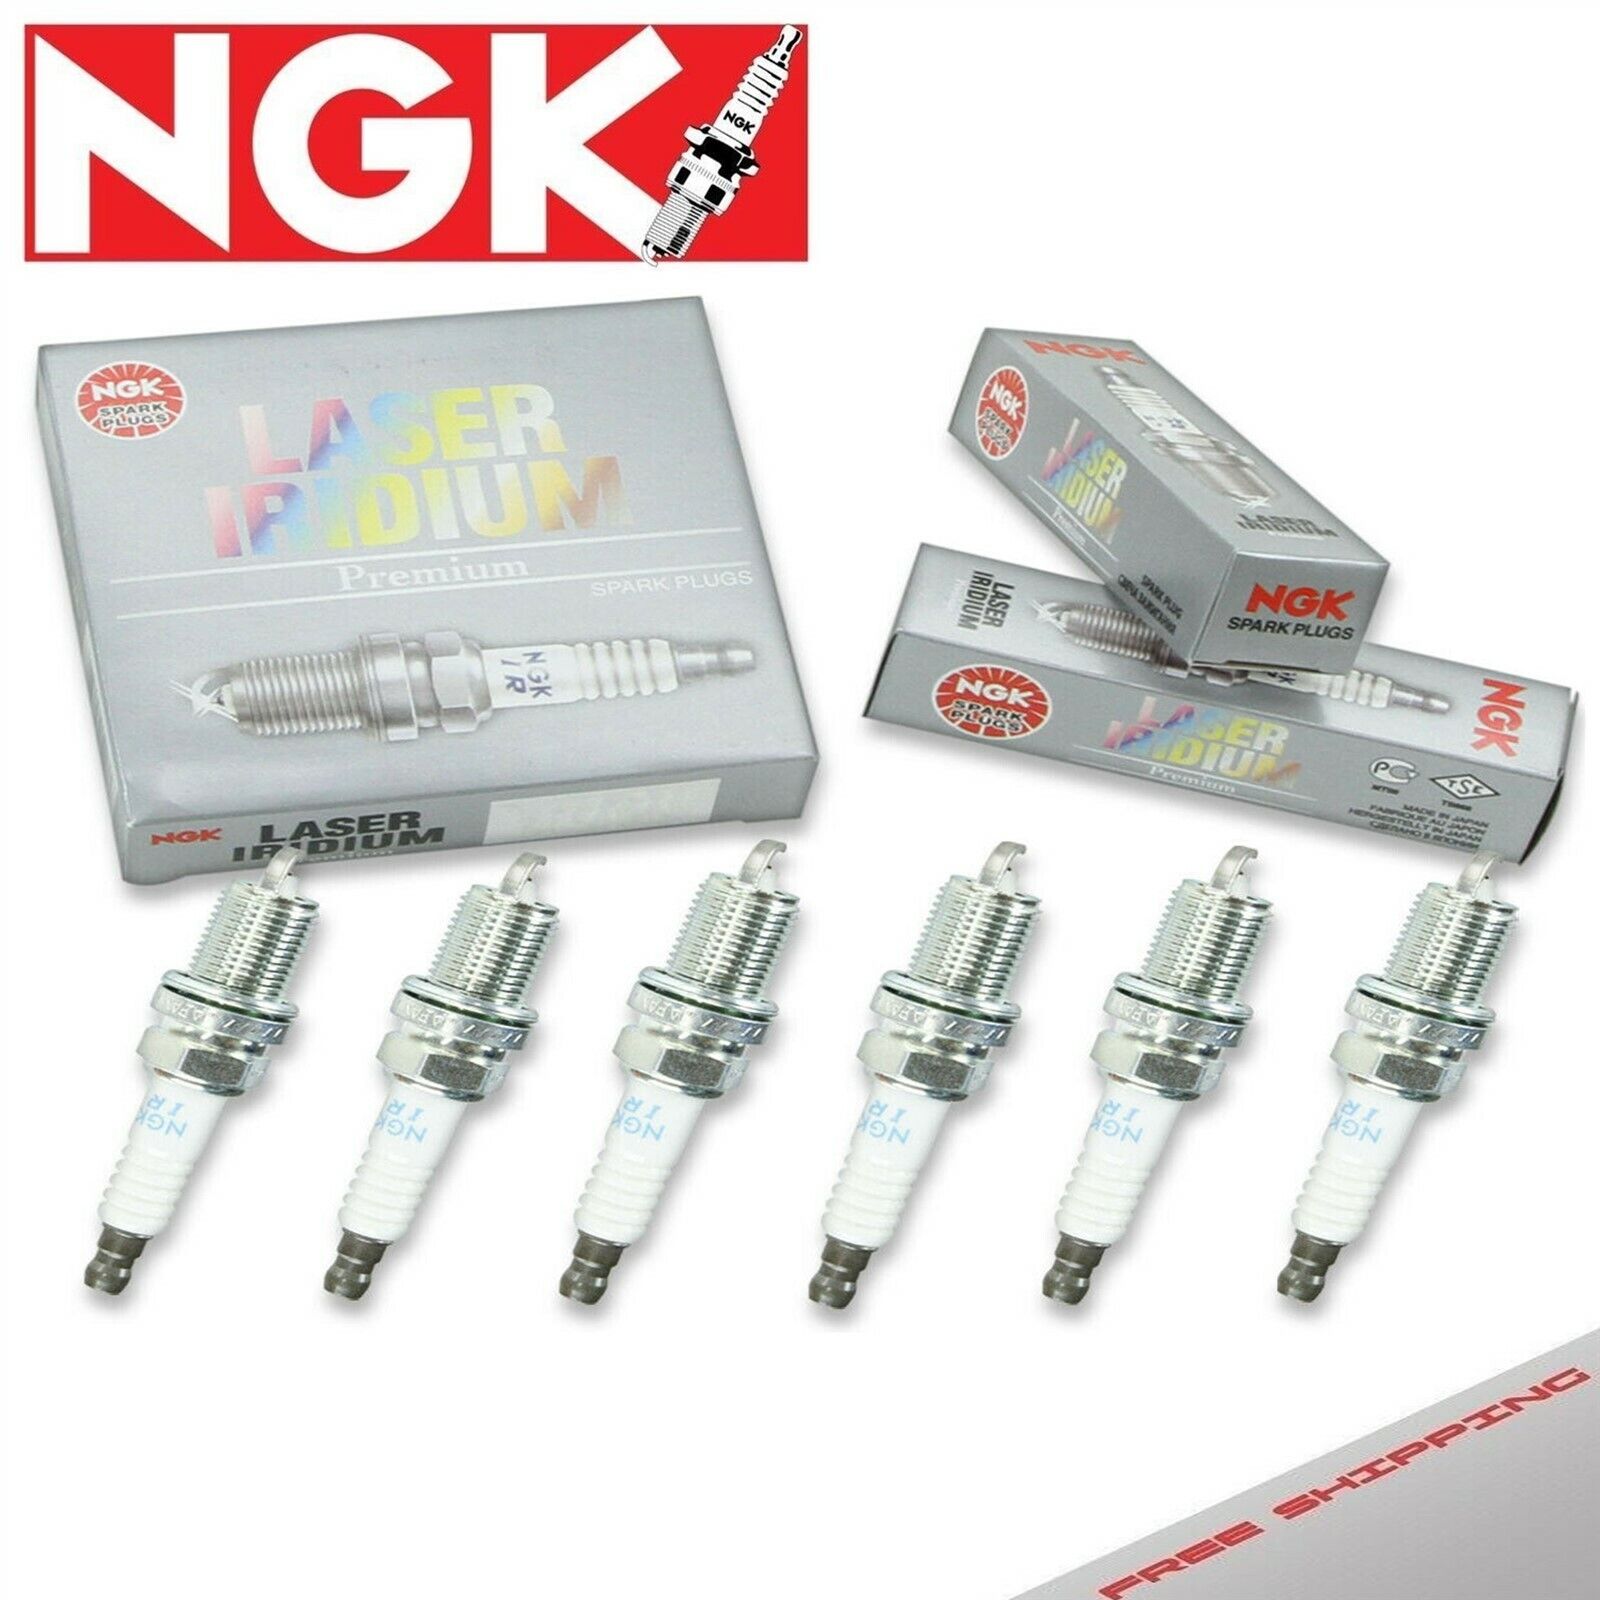 6 x Spark Plugs Made in Japan NGK Laser Iridium 93623 IFR7U-4D 93623 IFR7U4D